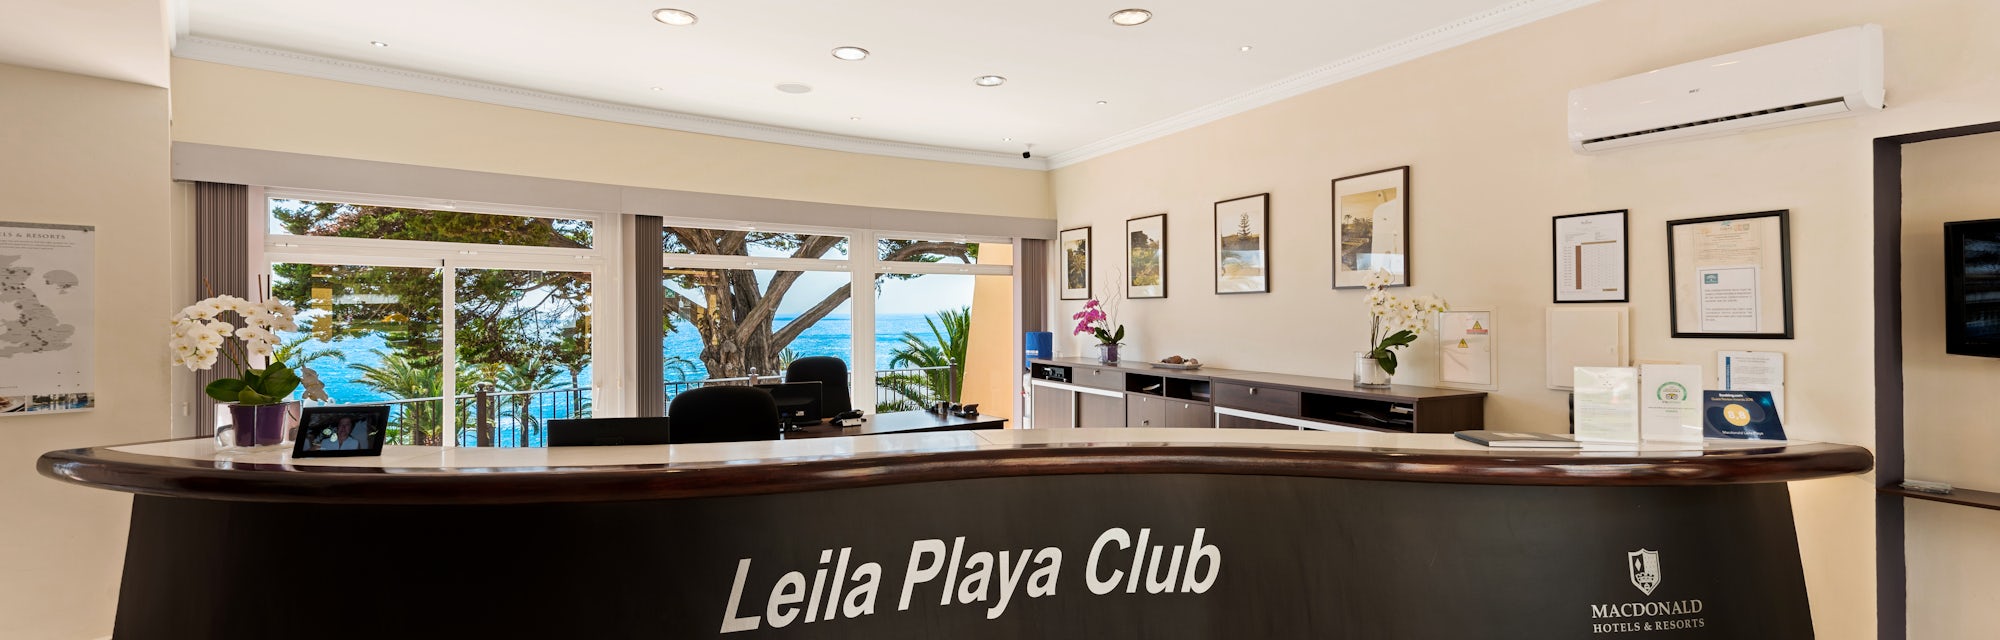 Leila Playa Reception